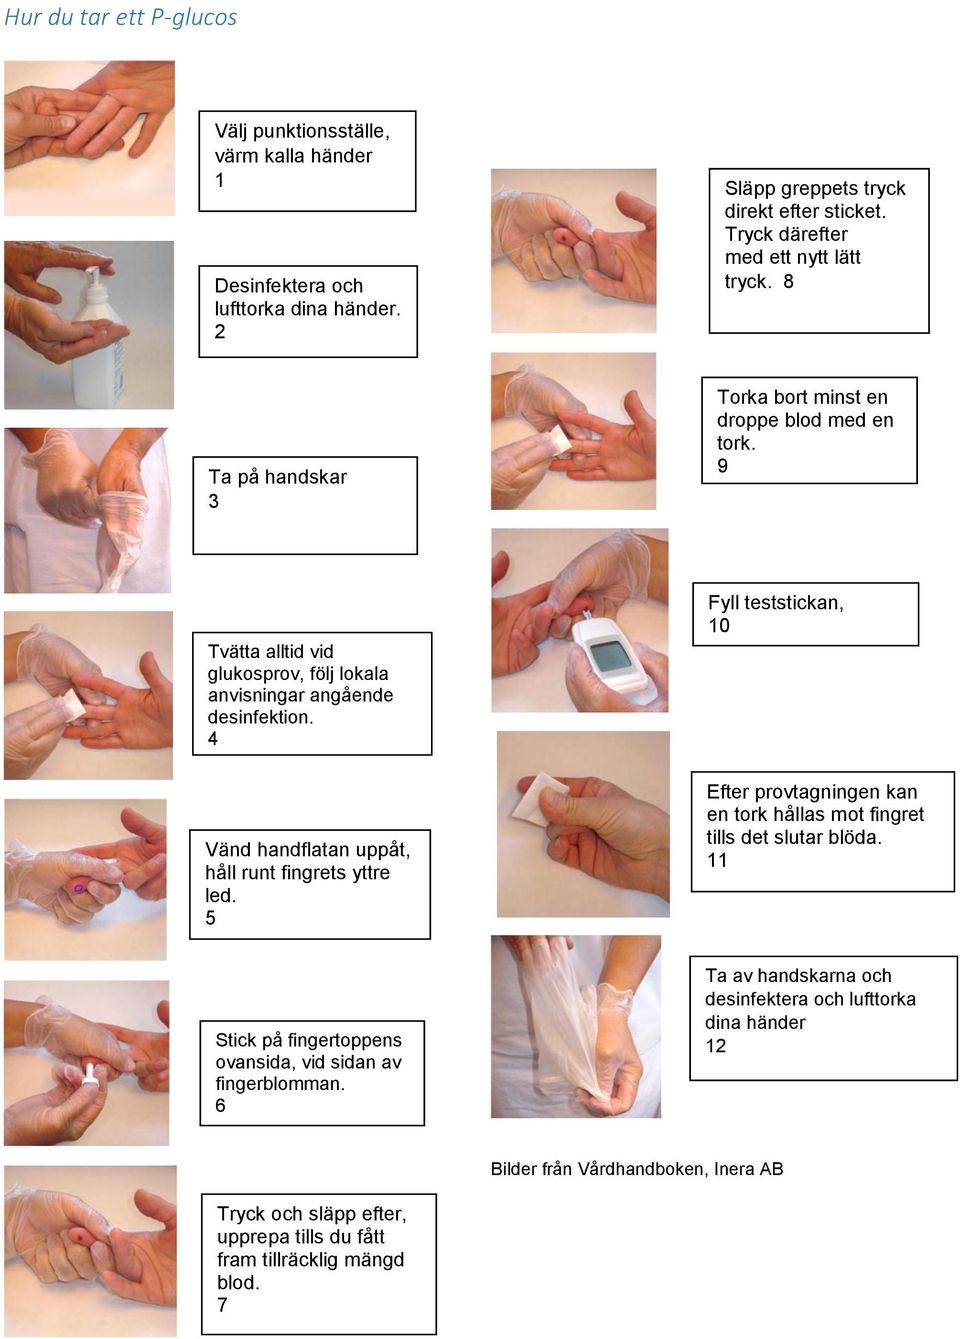 4 Vänd handflatan uppåt, håll runt fingrets yttre led. 5 Fyll teststickan, 10 Efter provtagningen kan en tork hållas mot fingret tills det slutar blöda.